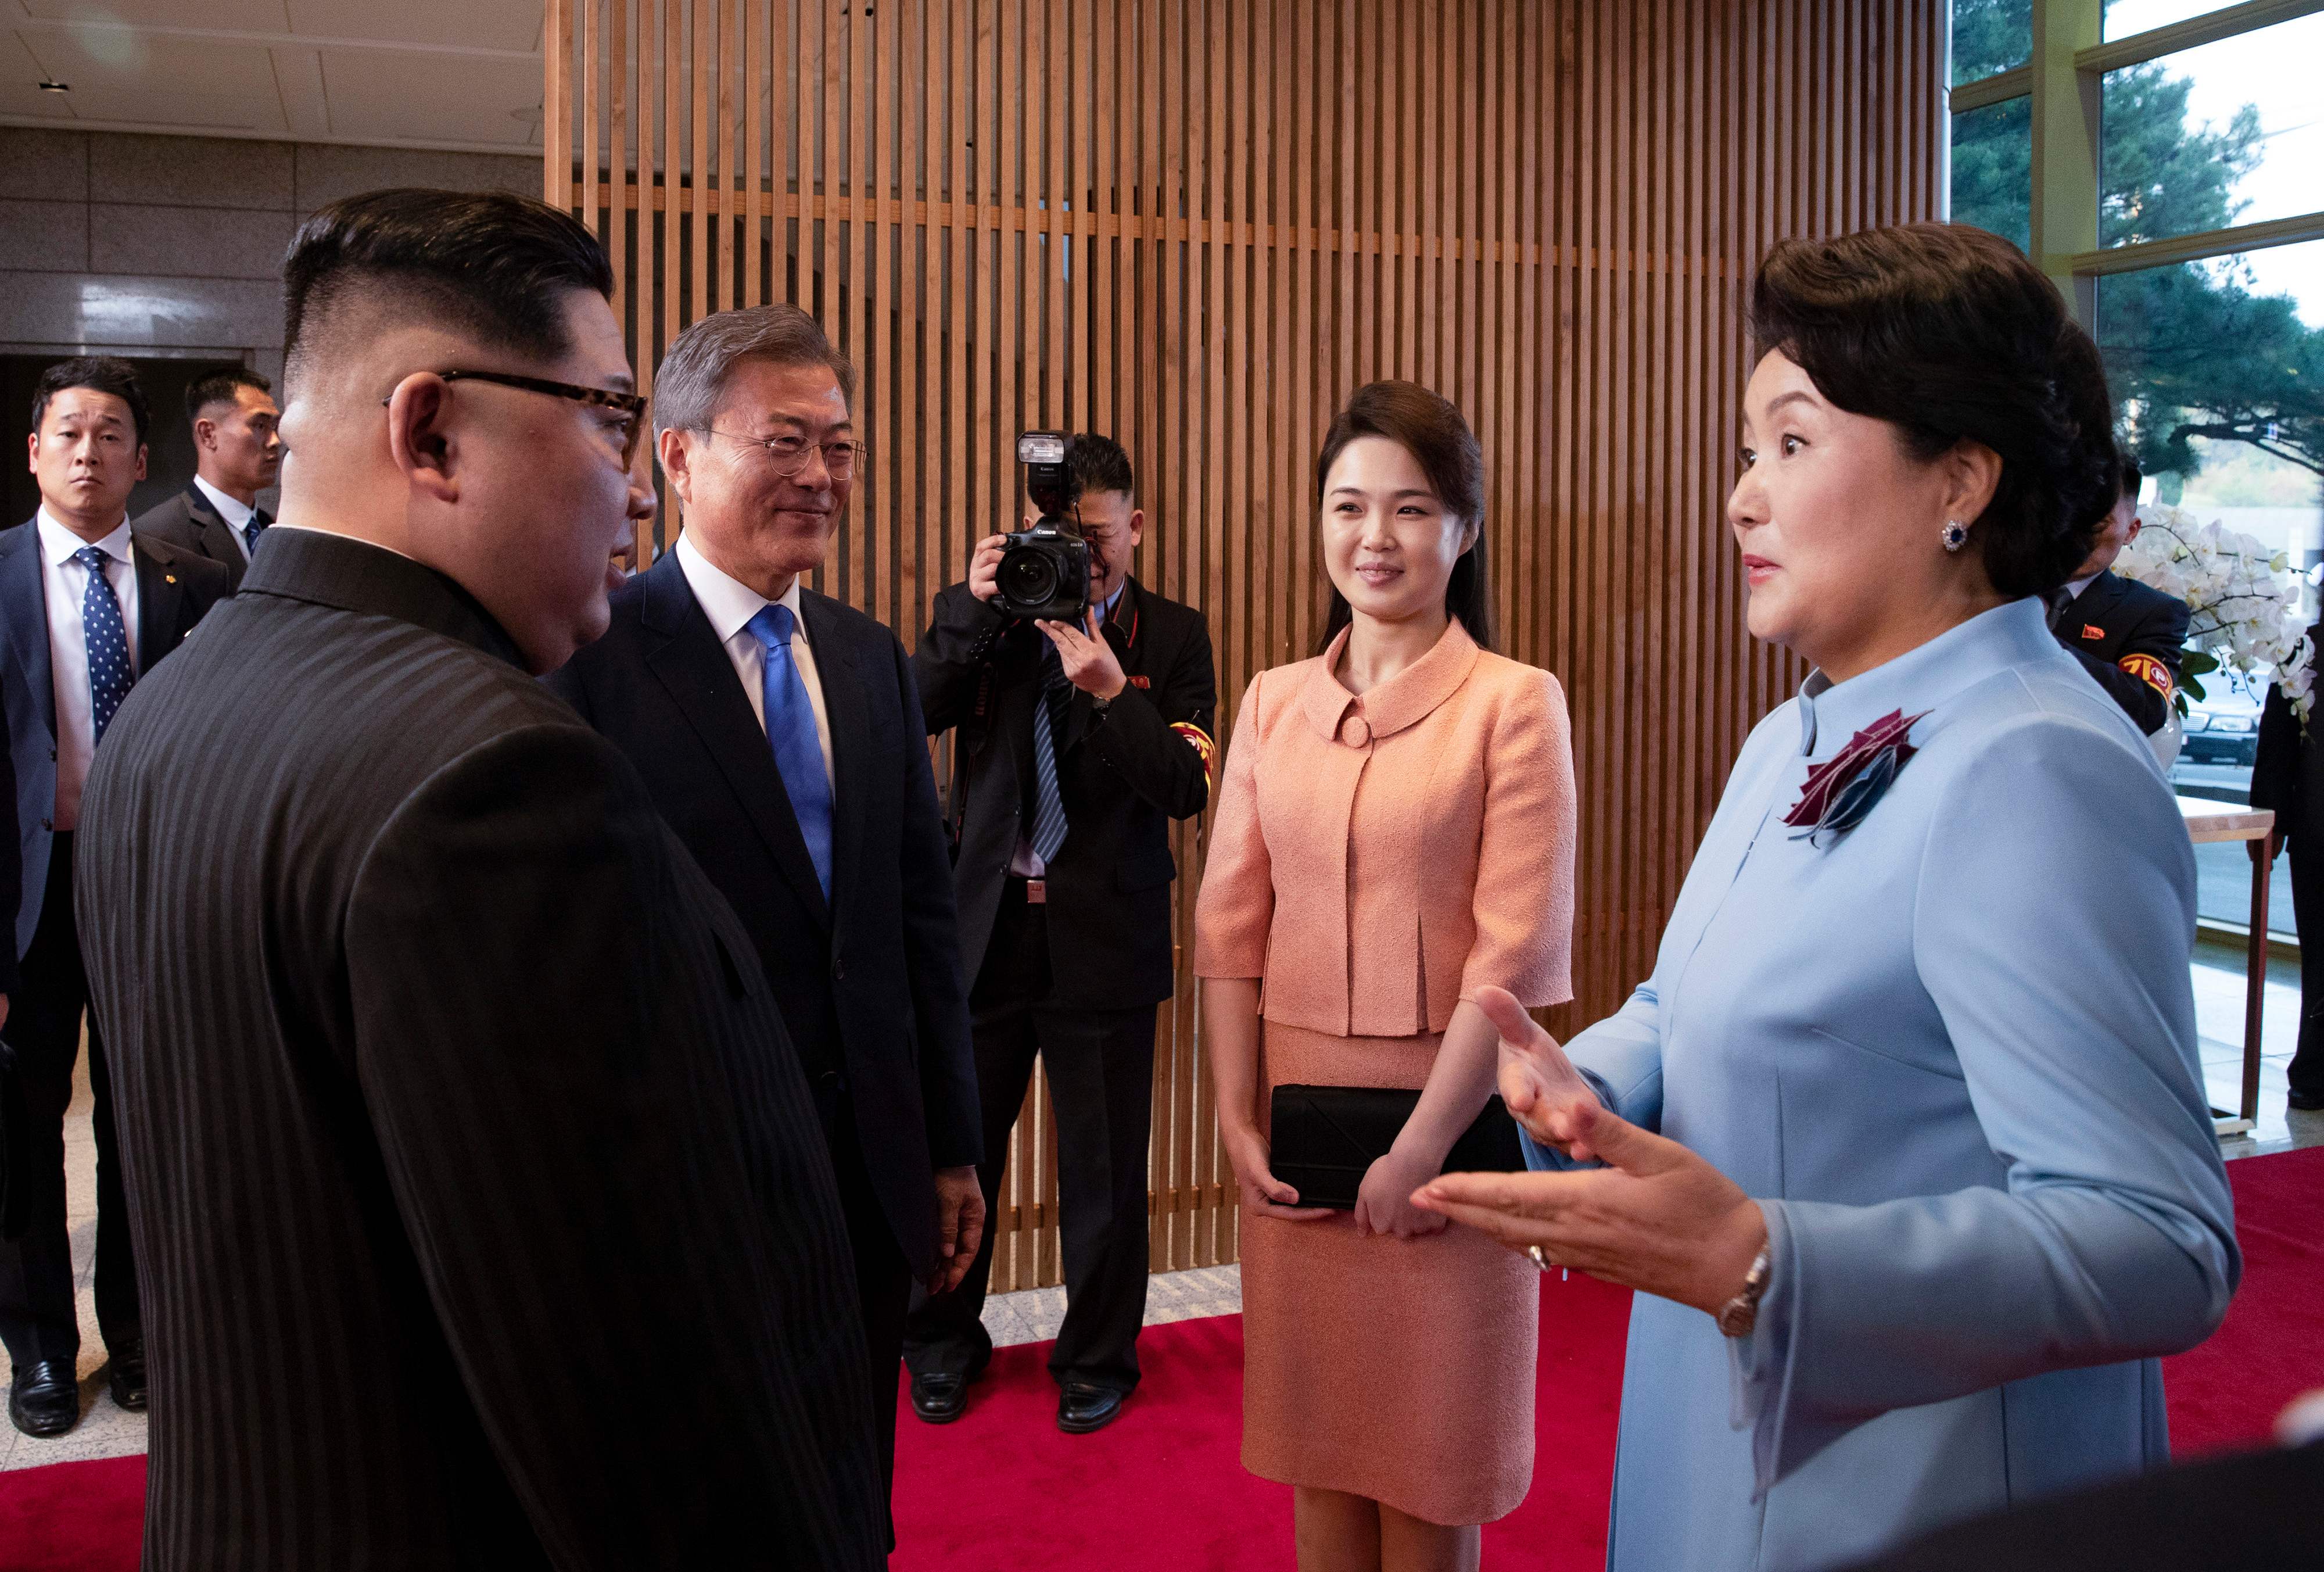 قريتة رئيس كوريا الجنوبية تتحدث مع زعيم كوريا الشمالية